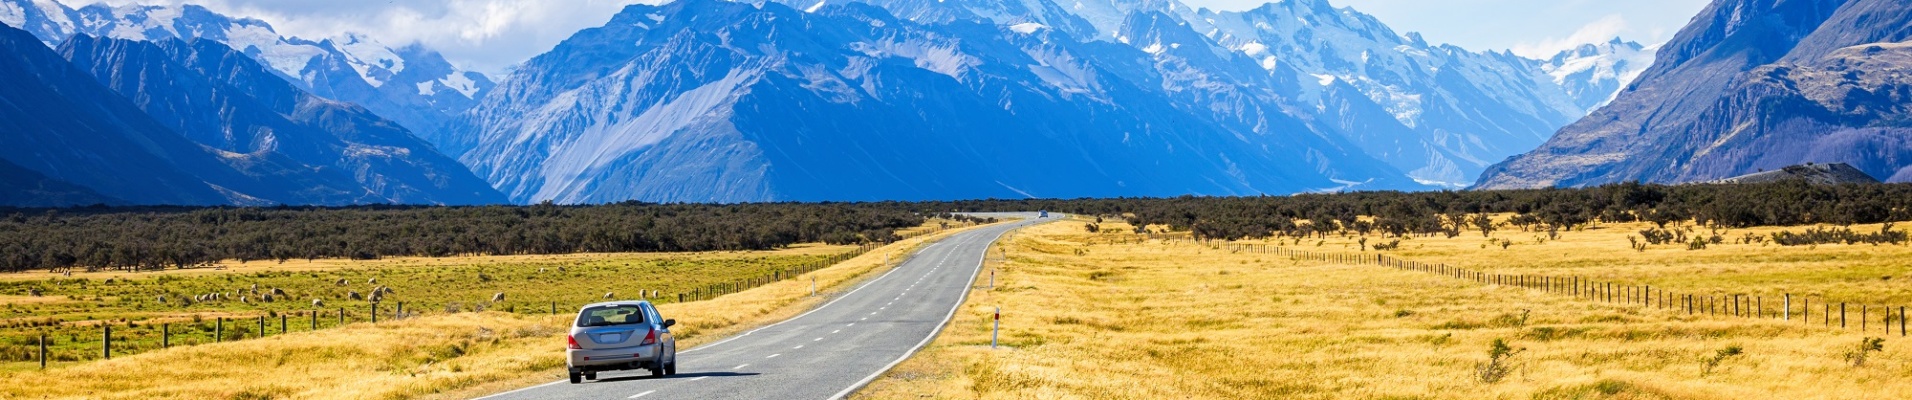 Voiture sur une route face au Mont Cook en Nouvelle Zélande